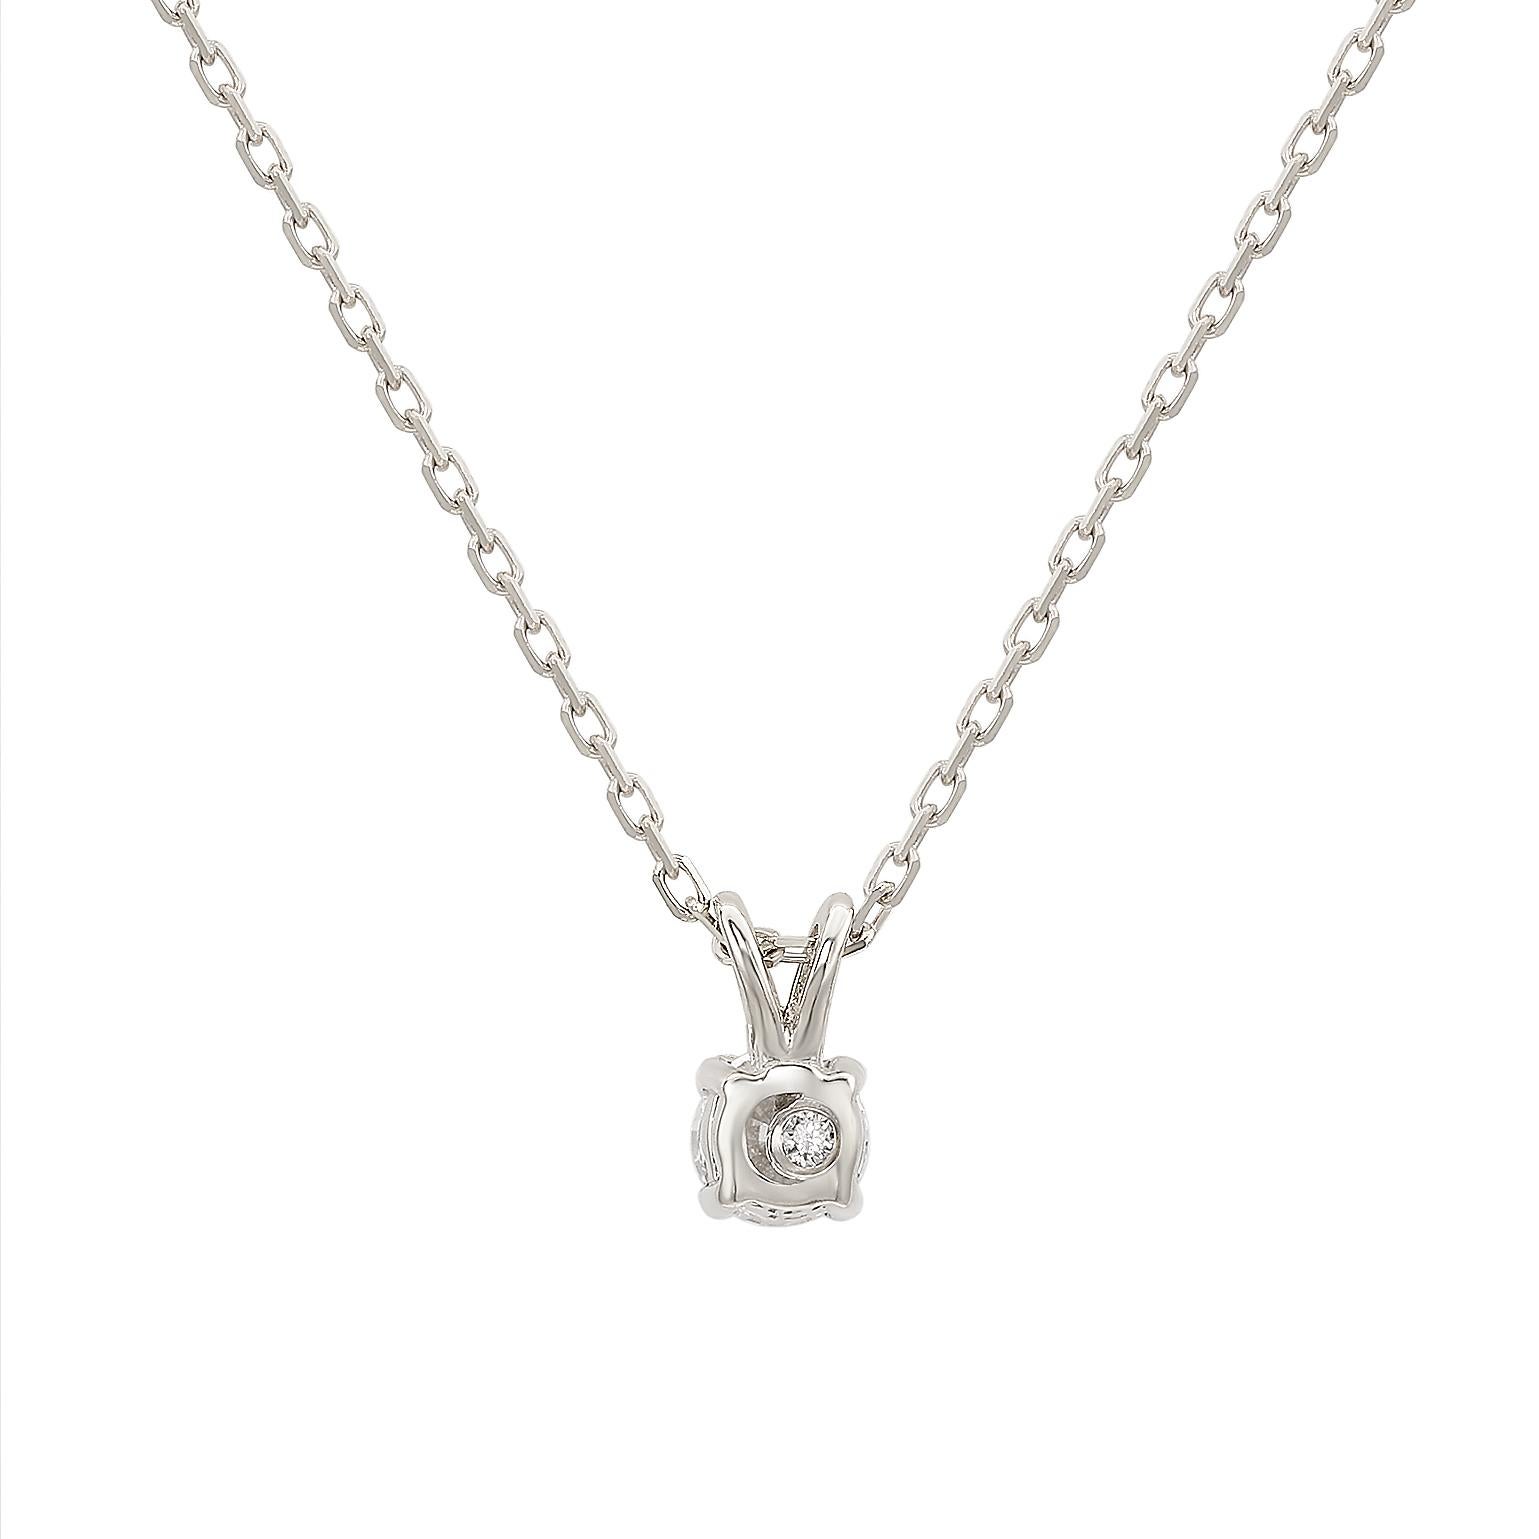 Ajoutez une touche d'élégance à votre tenue avec ce collier solitaire étincelant de Suzy Levian, orné d'un magnifique diamant blanc en serti clos fendu. Les diamants étincelants sont sertis à la main dans de l'or blanc 14 carats, pèsent 0,26ctw et